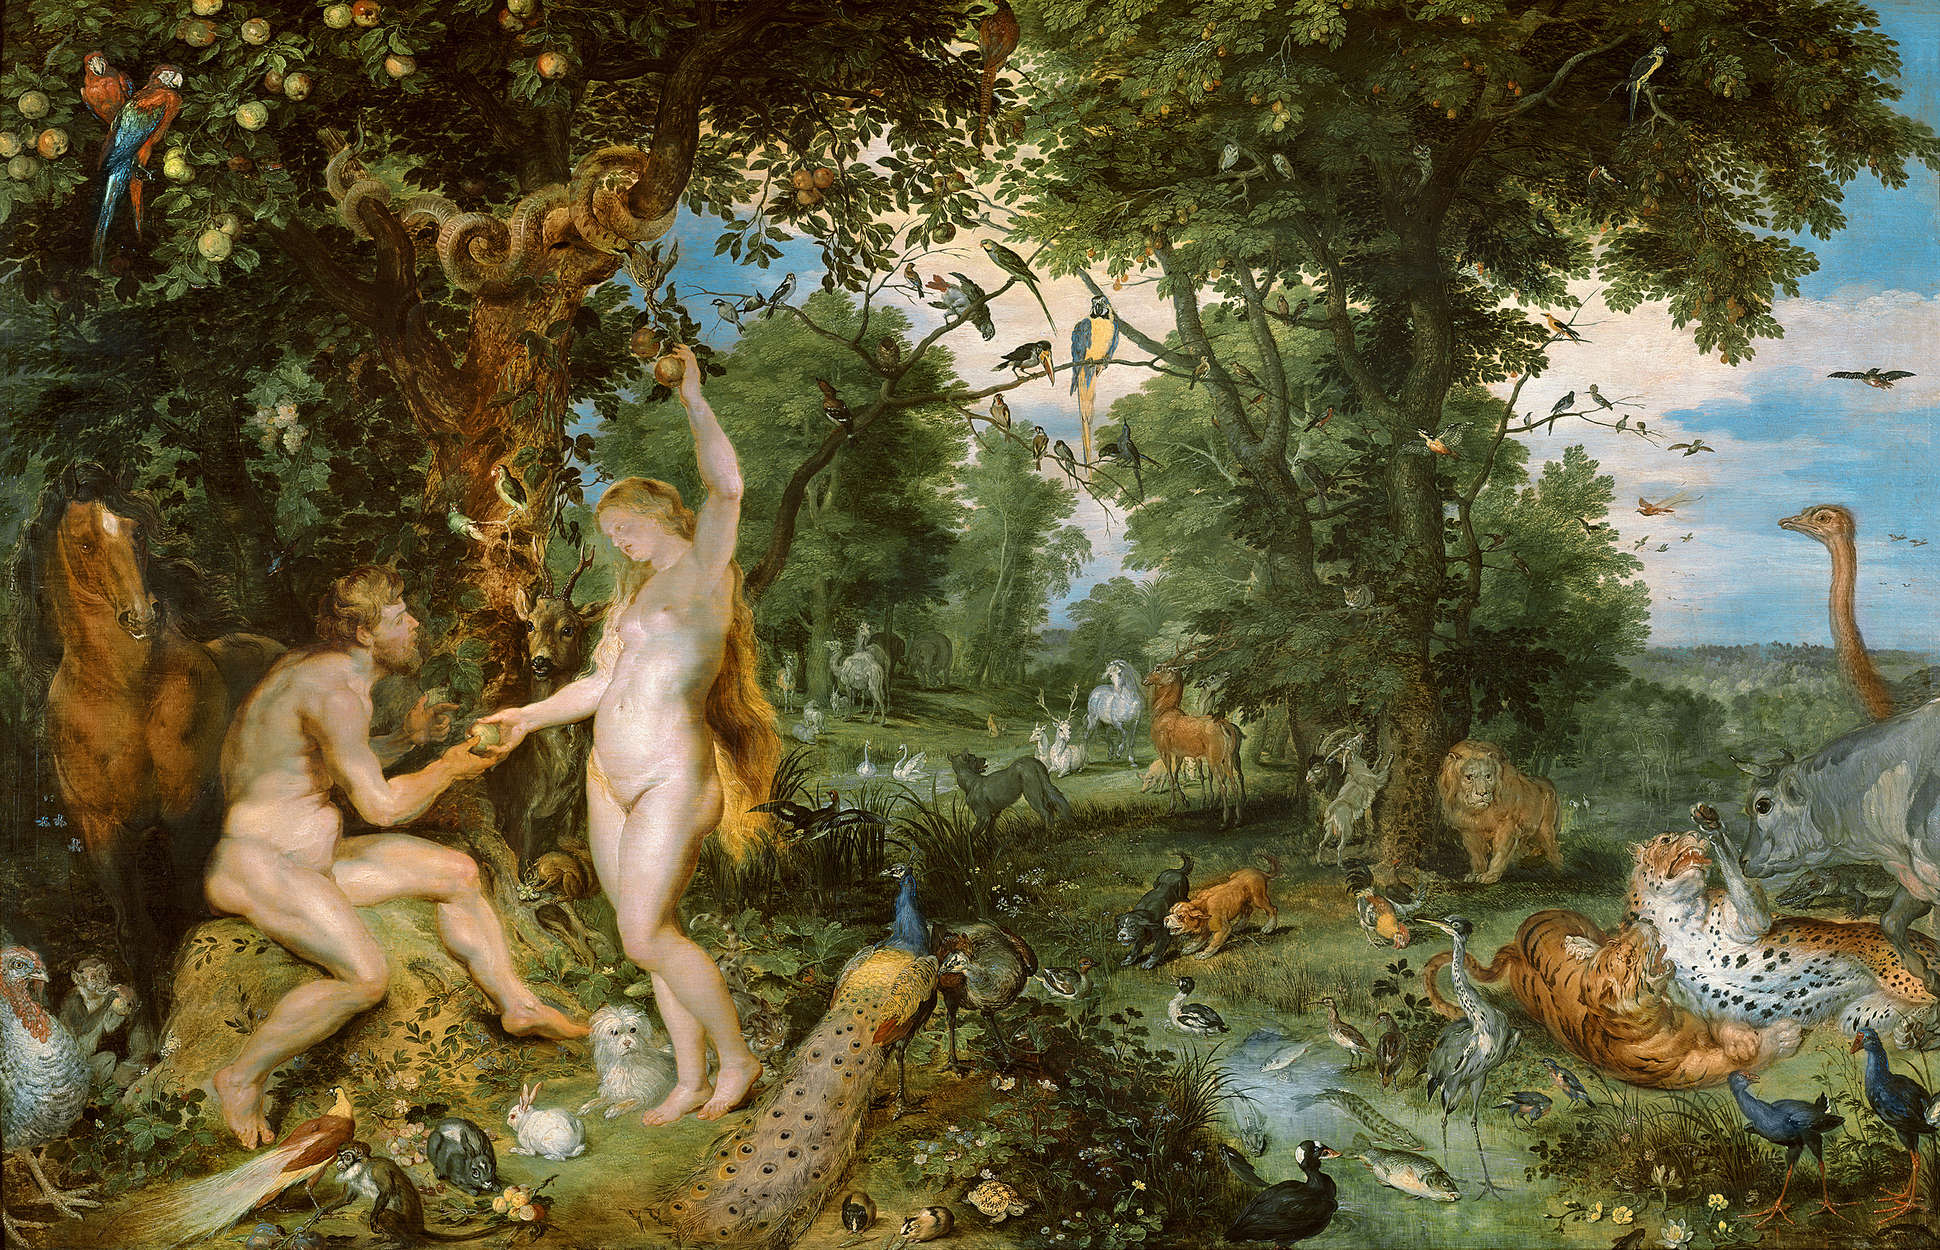             Fotomurali "Il giardino dell'Eden con la caduta" di Pieter Brueghel
        